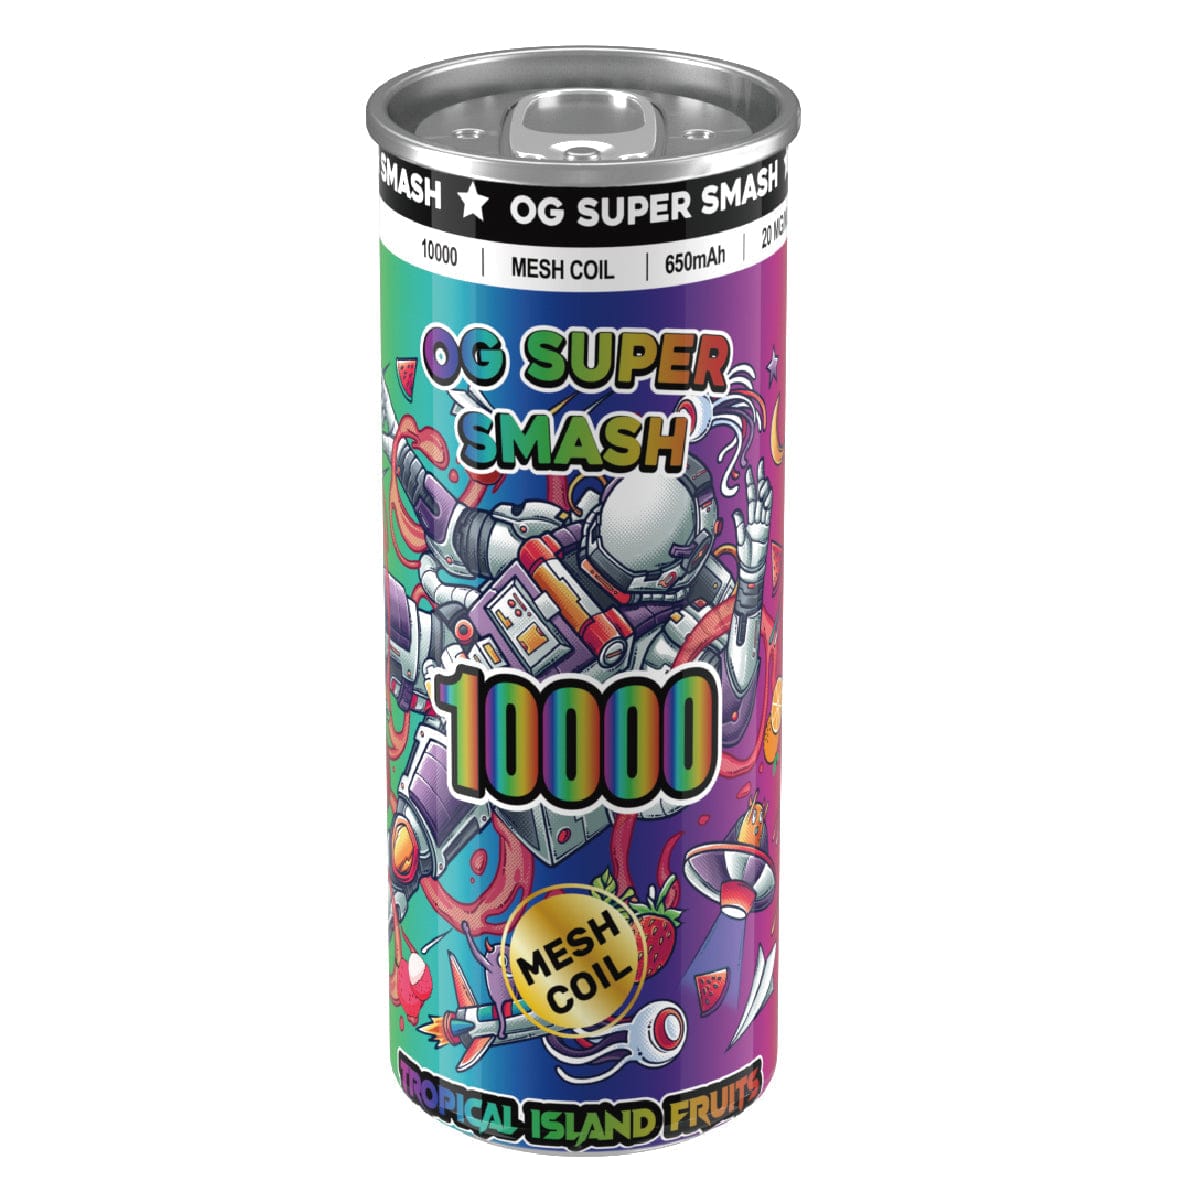 OG Super Smash 10000 Puffs Disposable Vape Pod - Wolfvapes.co.uk-Tropical Island Fruits